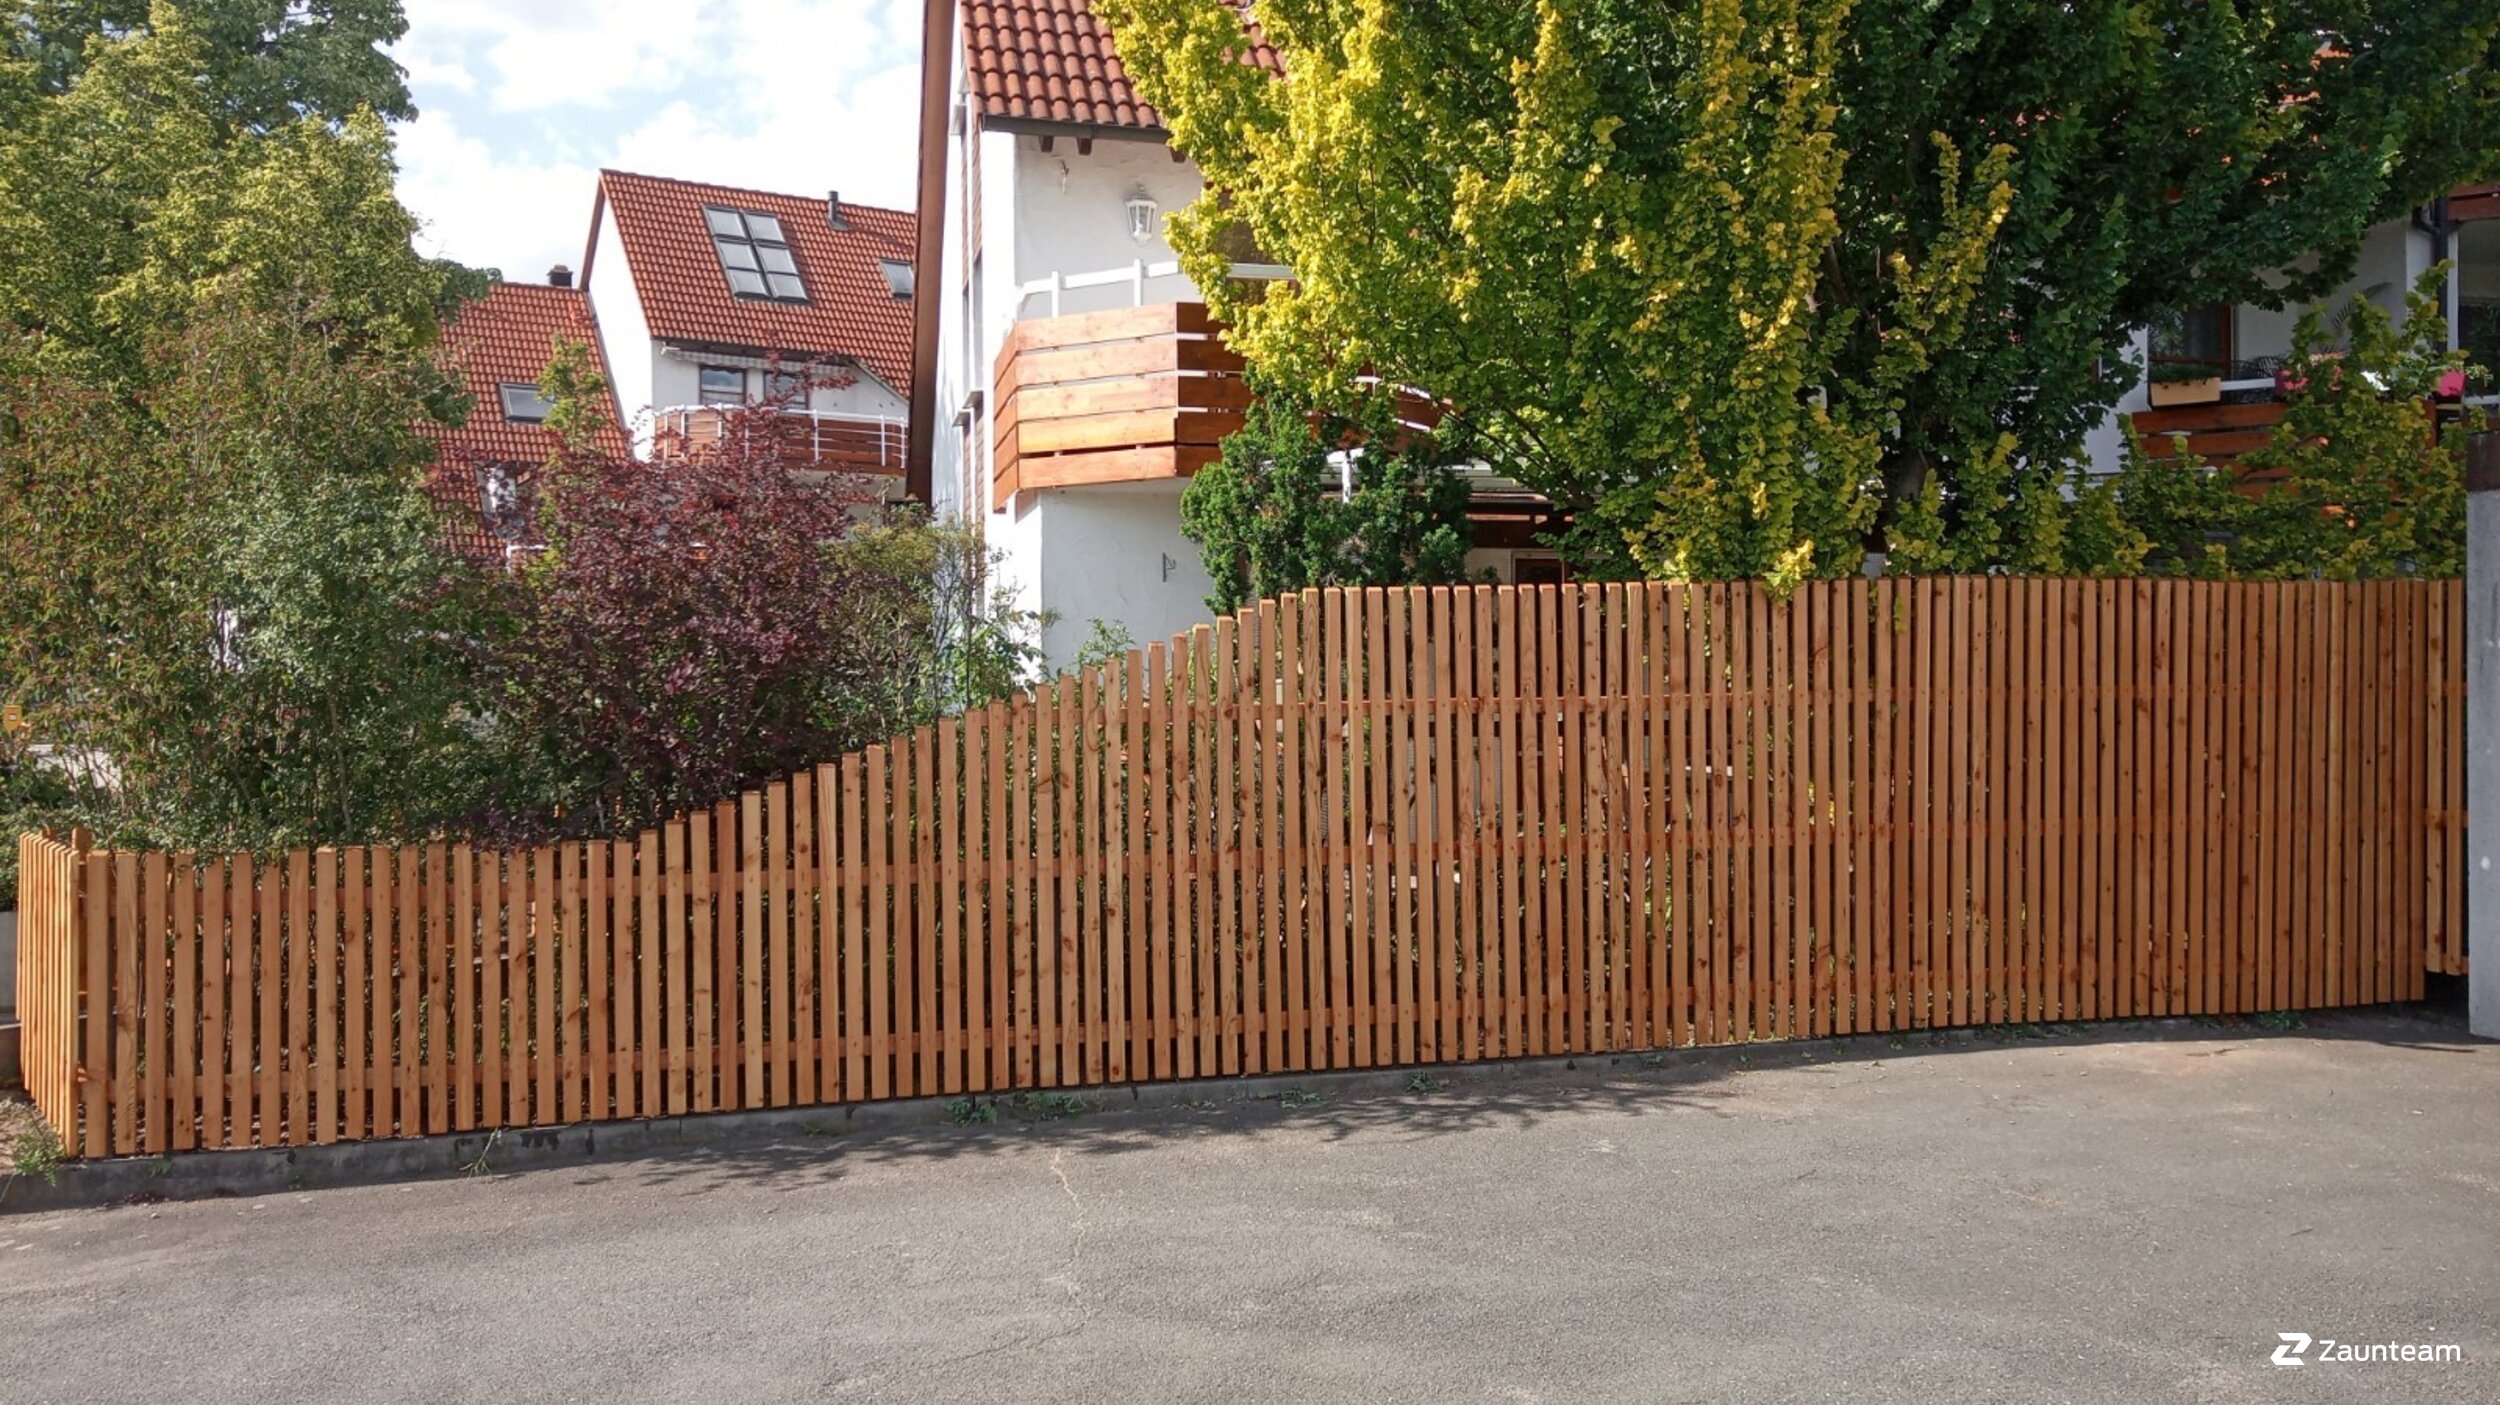 Protection brise-vue en bois de 2020 à 90530 Wendelstein Allemagne de Zaunteam Nürnberg.